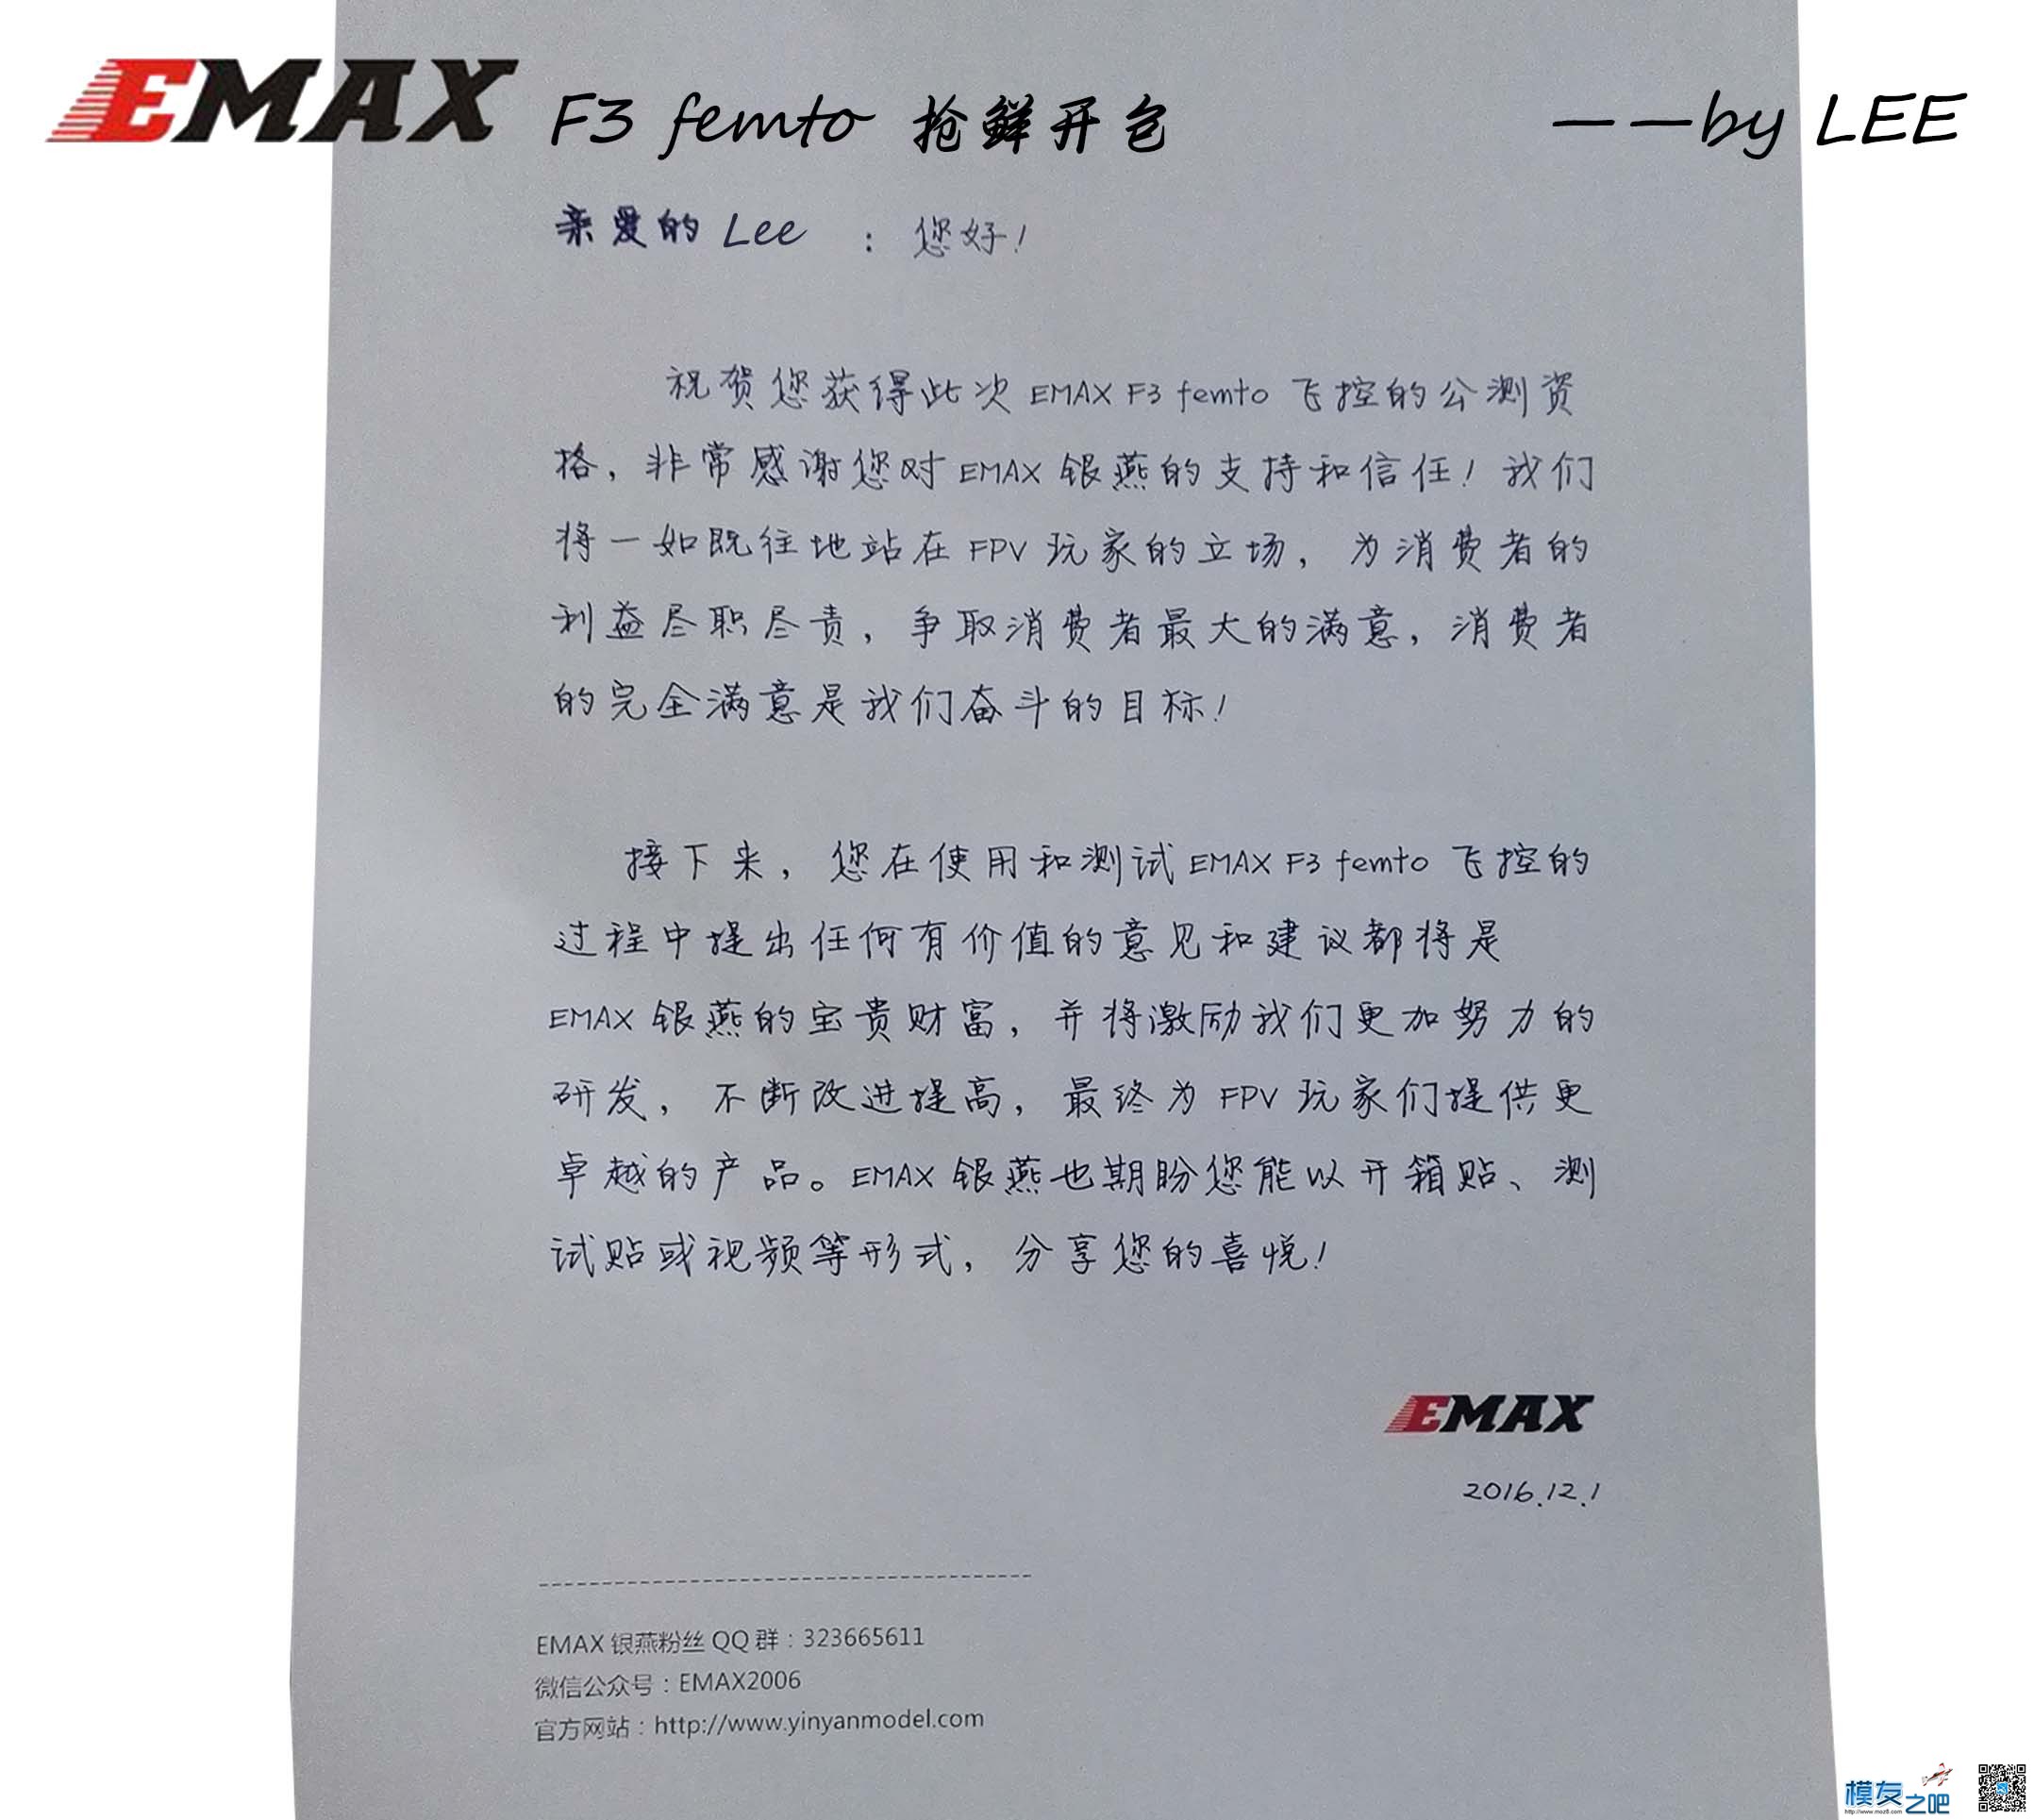 [LEE]EMAX 银燕 F3 femto飞控免费公测开包 飞控,银燕,免费,emax,有限公司 作者:lee 3214 